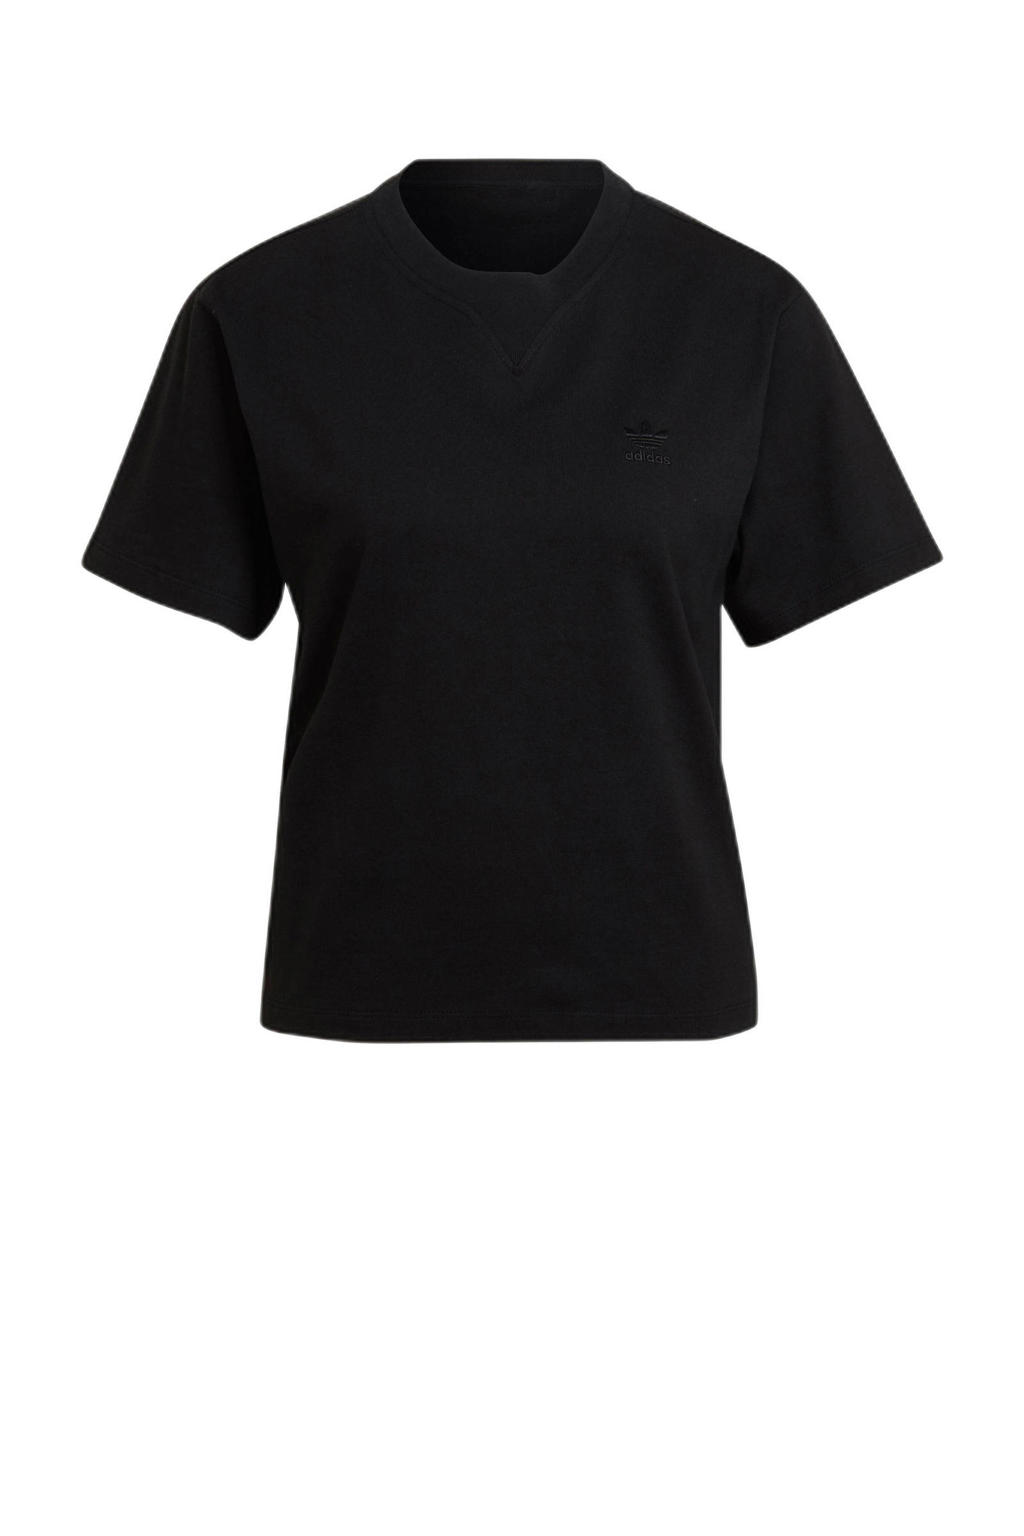 adidas Originals T-shirt zwart